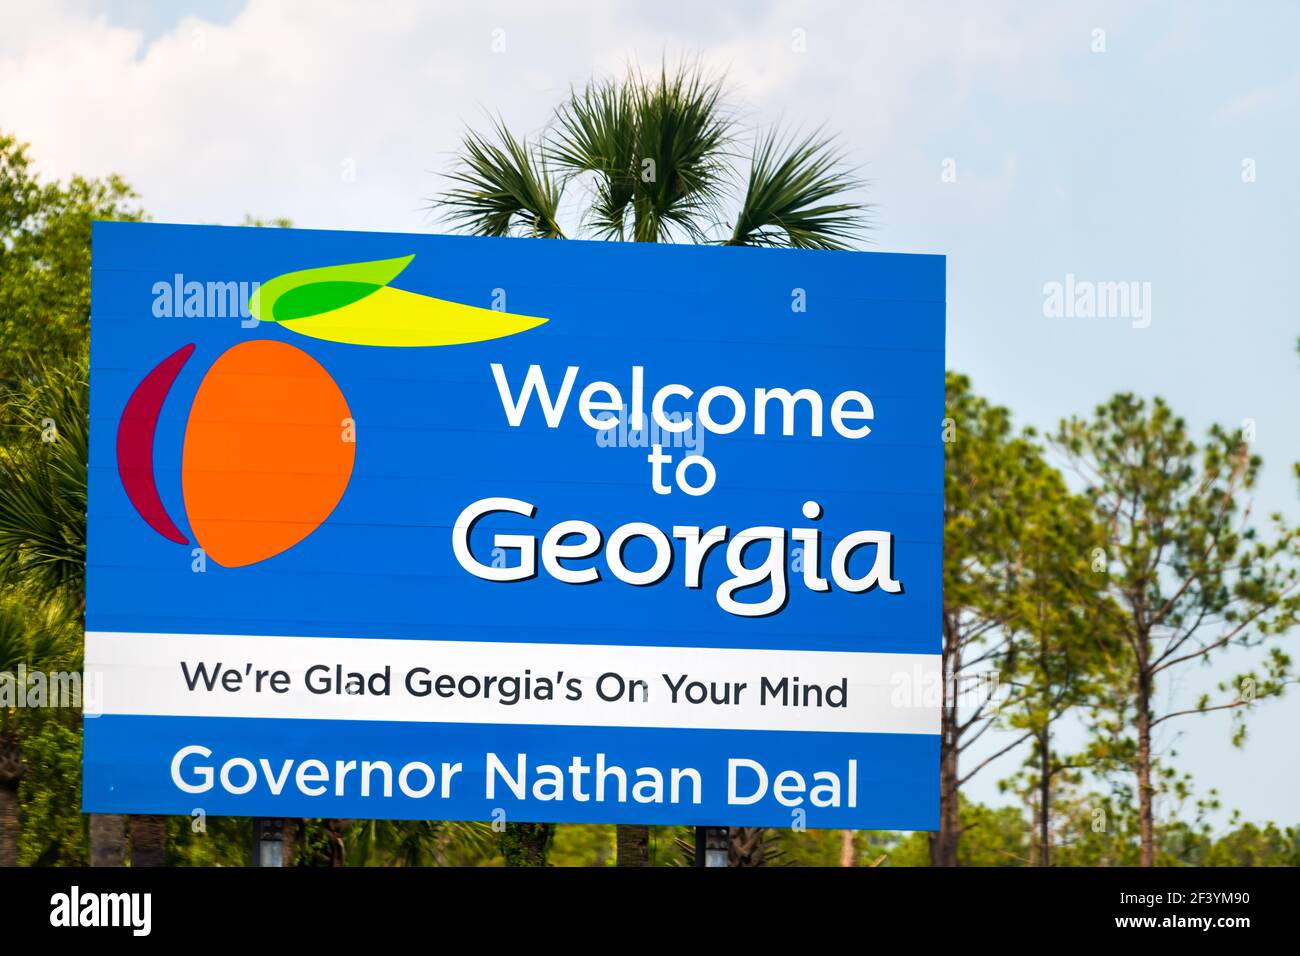 Kingsland, États-Unis - 10 mai 2018: Bienvenue à la Géorgie signer avec nous sommes heureux de la Géorgie sur votre esprit texte avec le gouverneur Nathan Deal Banque D'Images